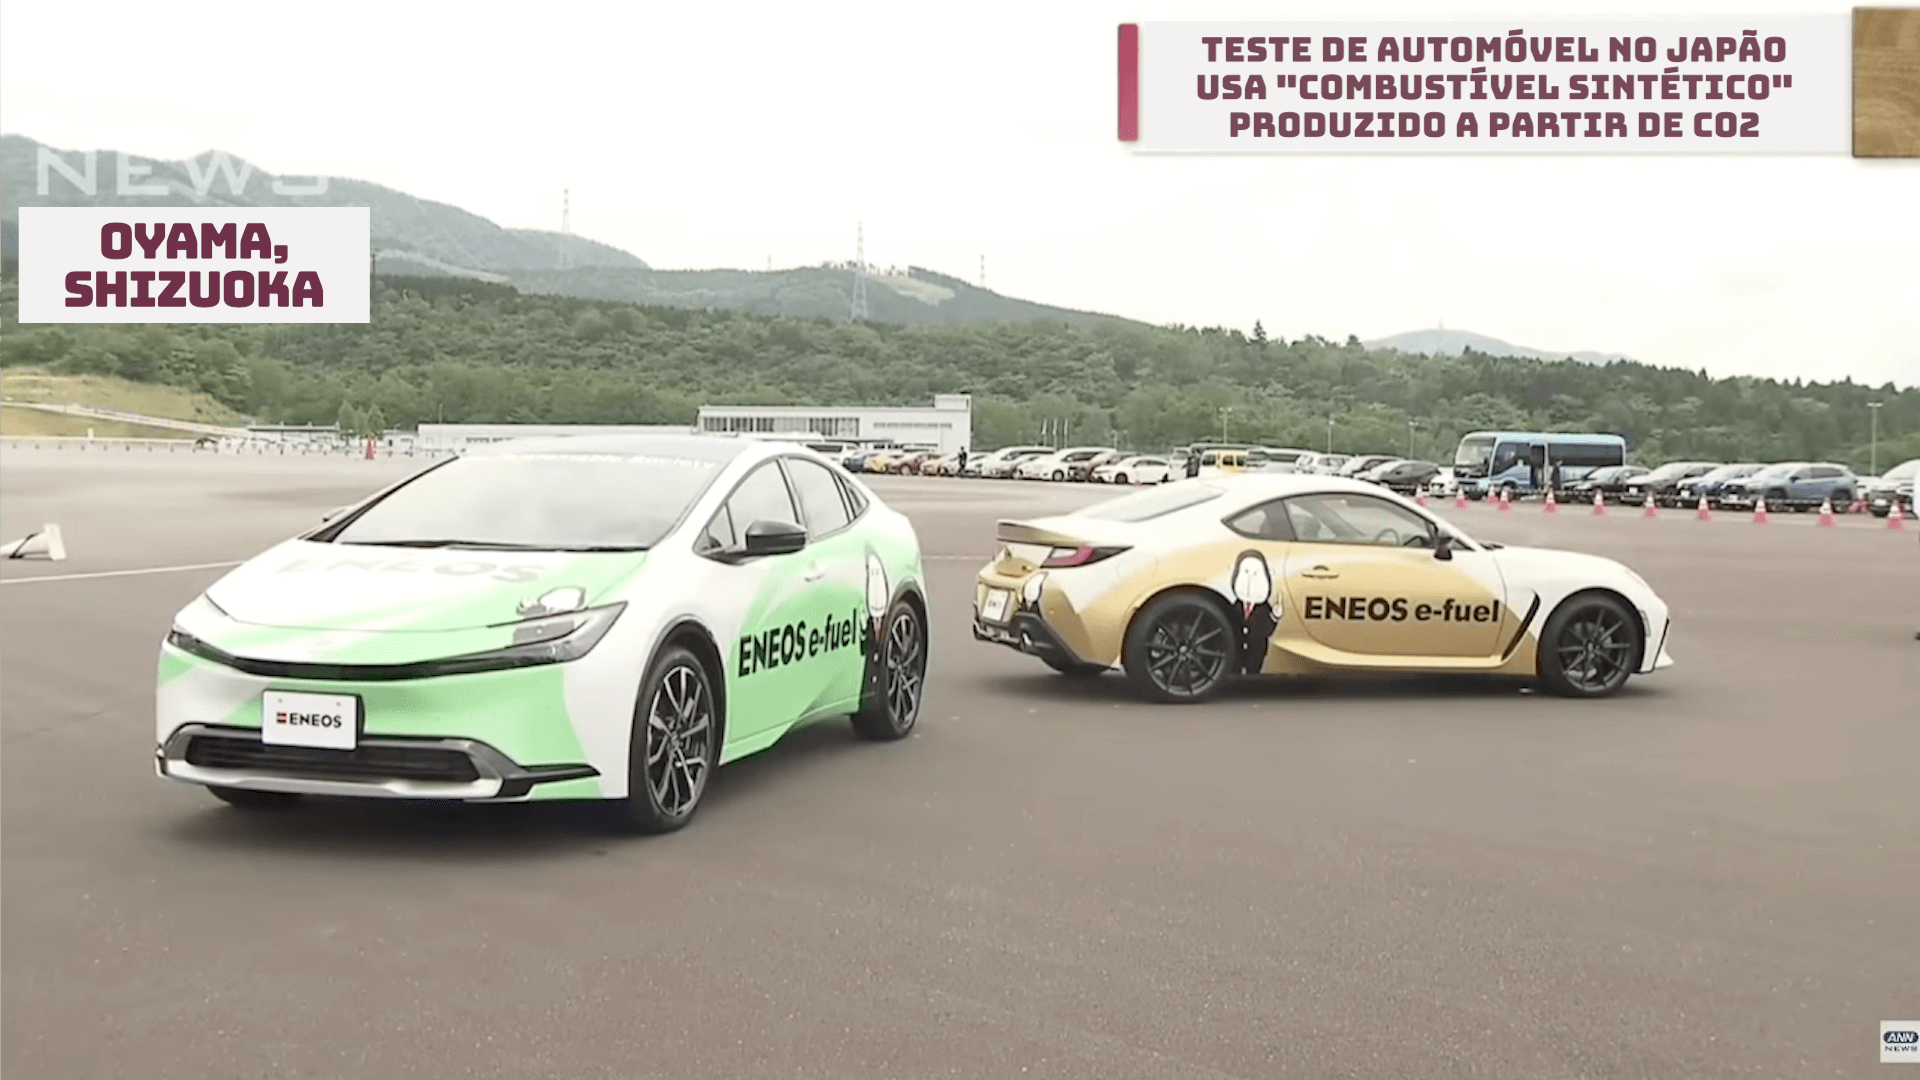 Teste de automóvel no Japão usa “combustível sintético” produzido a partir de CO2